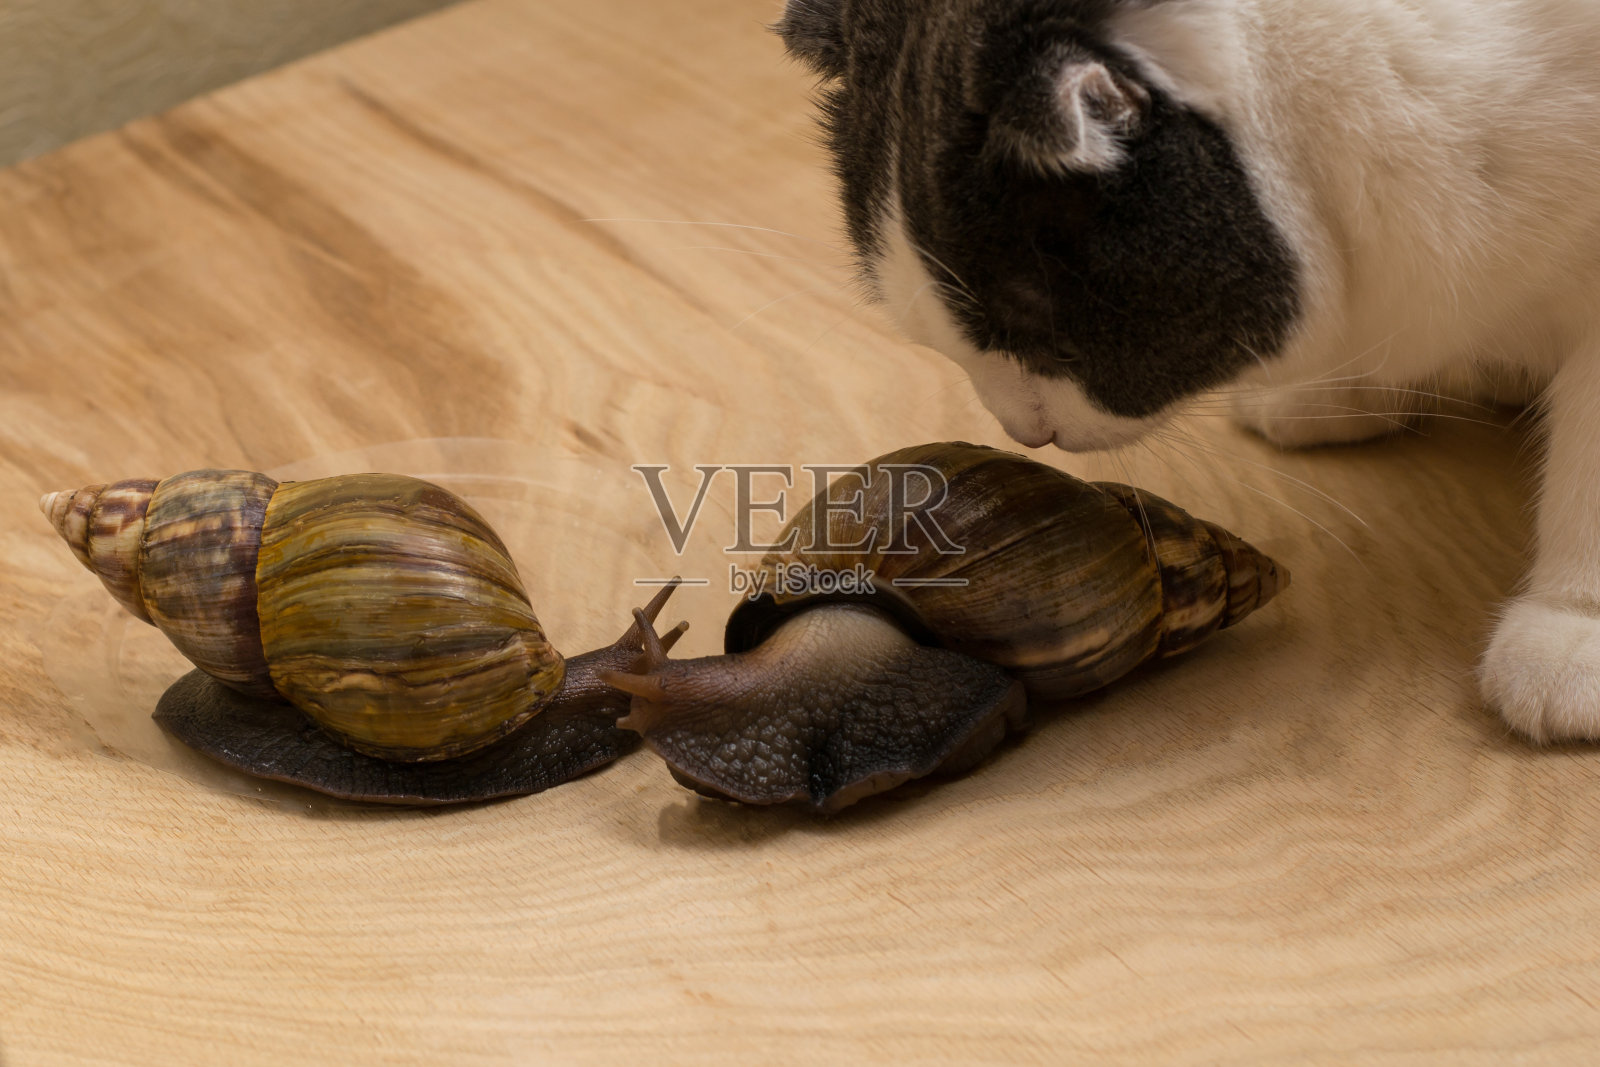 非洲蜗牛阿卡蒂娜在家里和猫嗅它们照片摄影图片